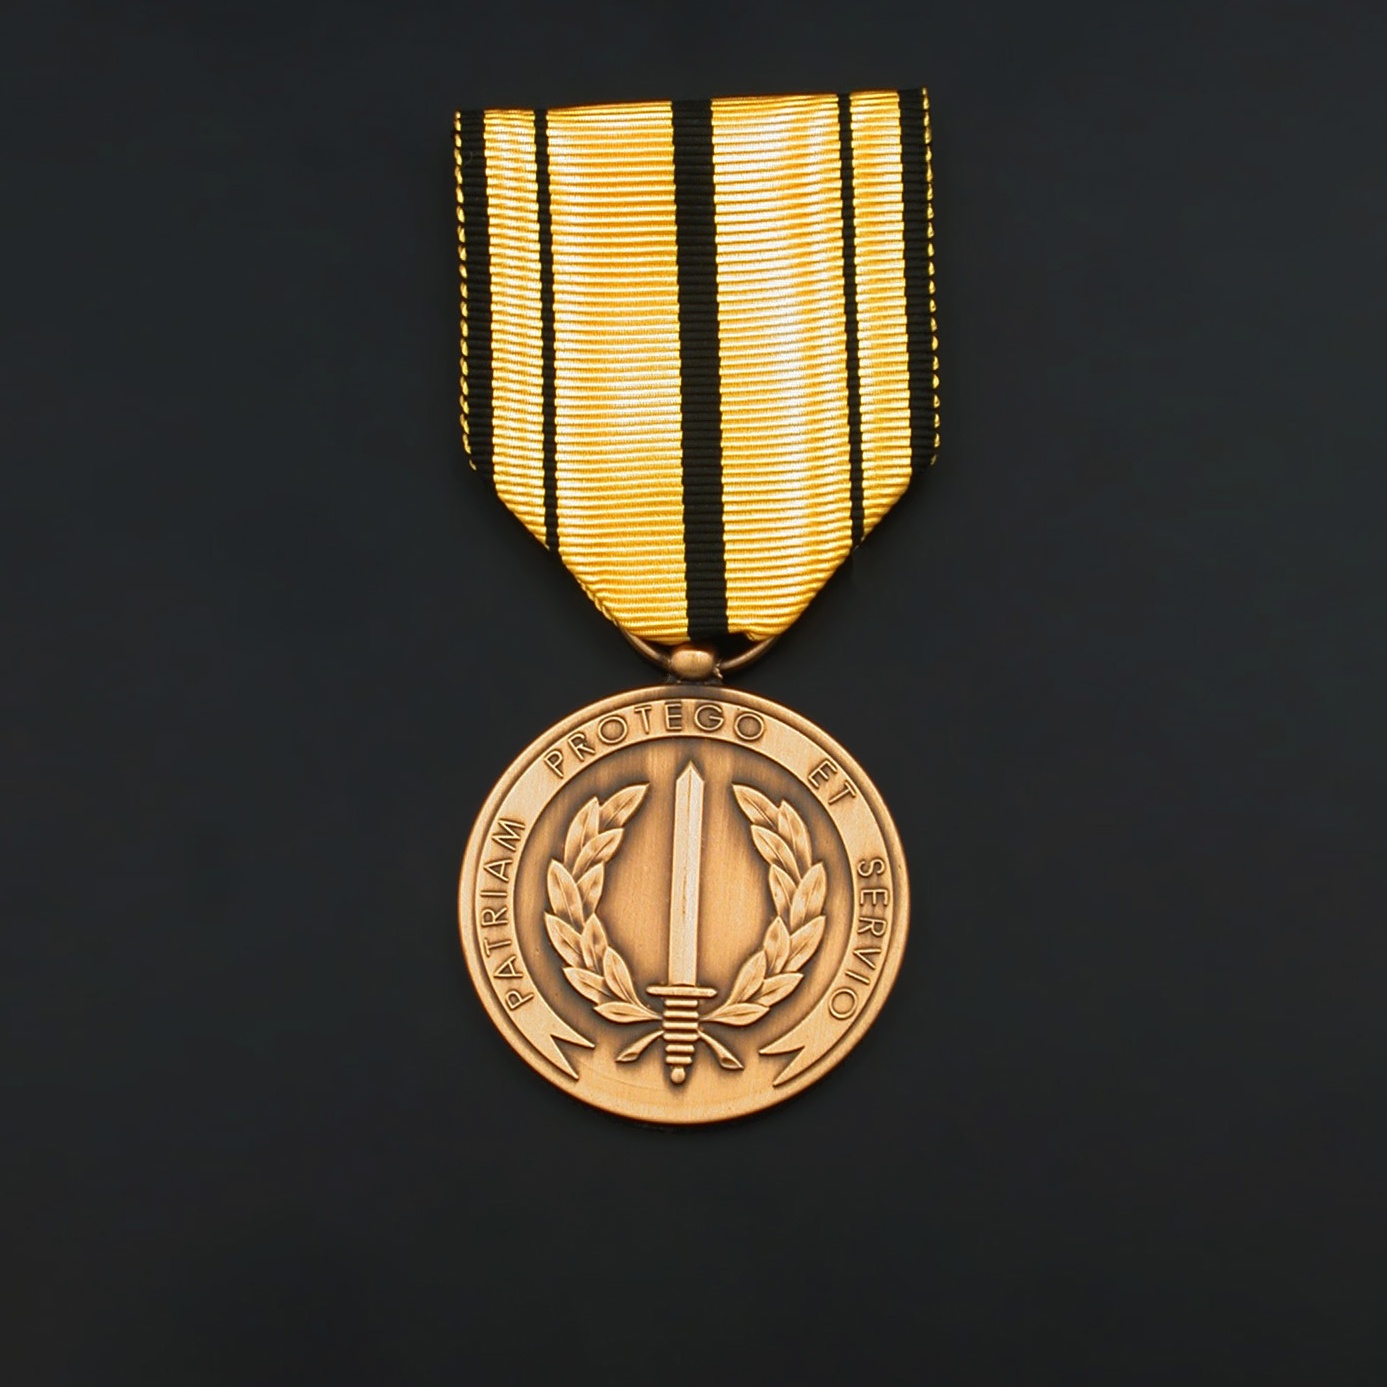 officieel-oorlogsereteken-medaille-voor-bewezen-diensten-01-01-10-oorlog-bewezen-diensten-officieel-model.jpg